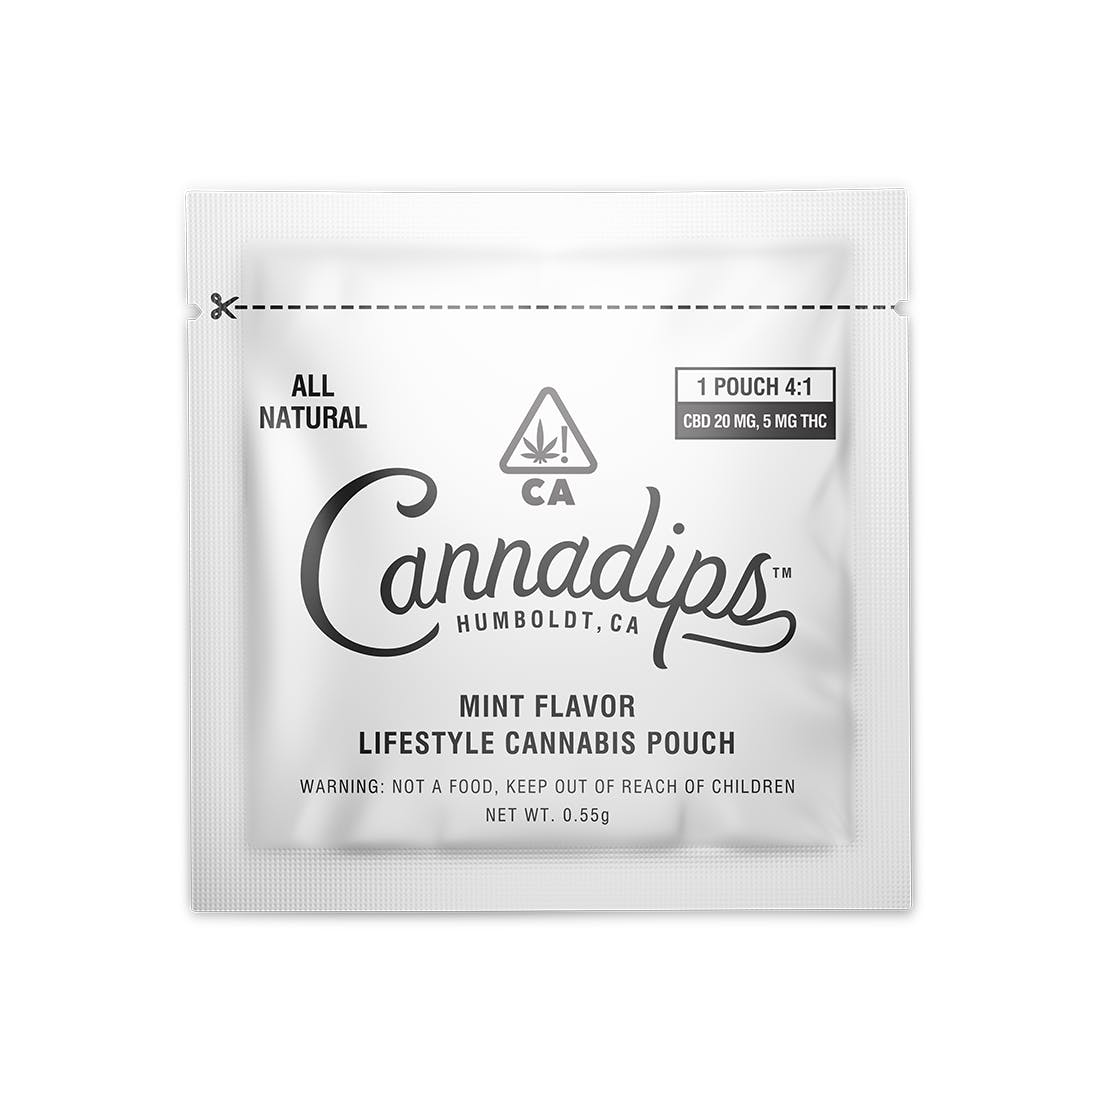 edible-cannadips-mint-cbd-flavor-lifestyle-cannabis-pouch